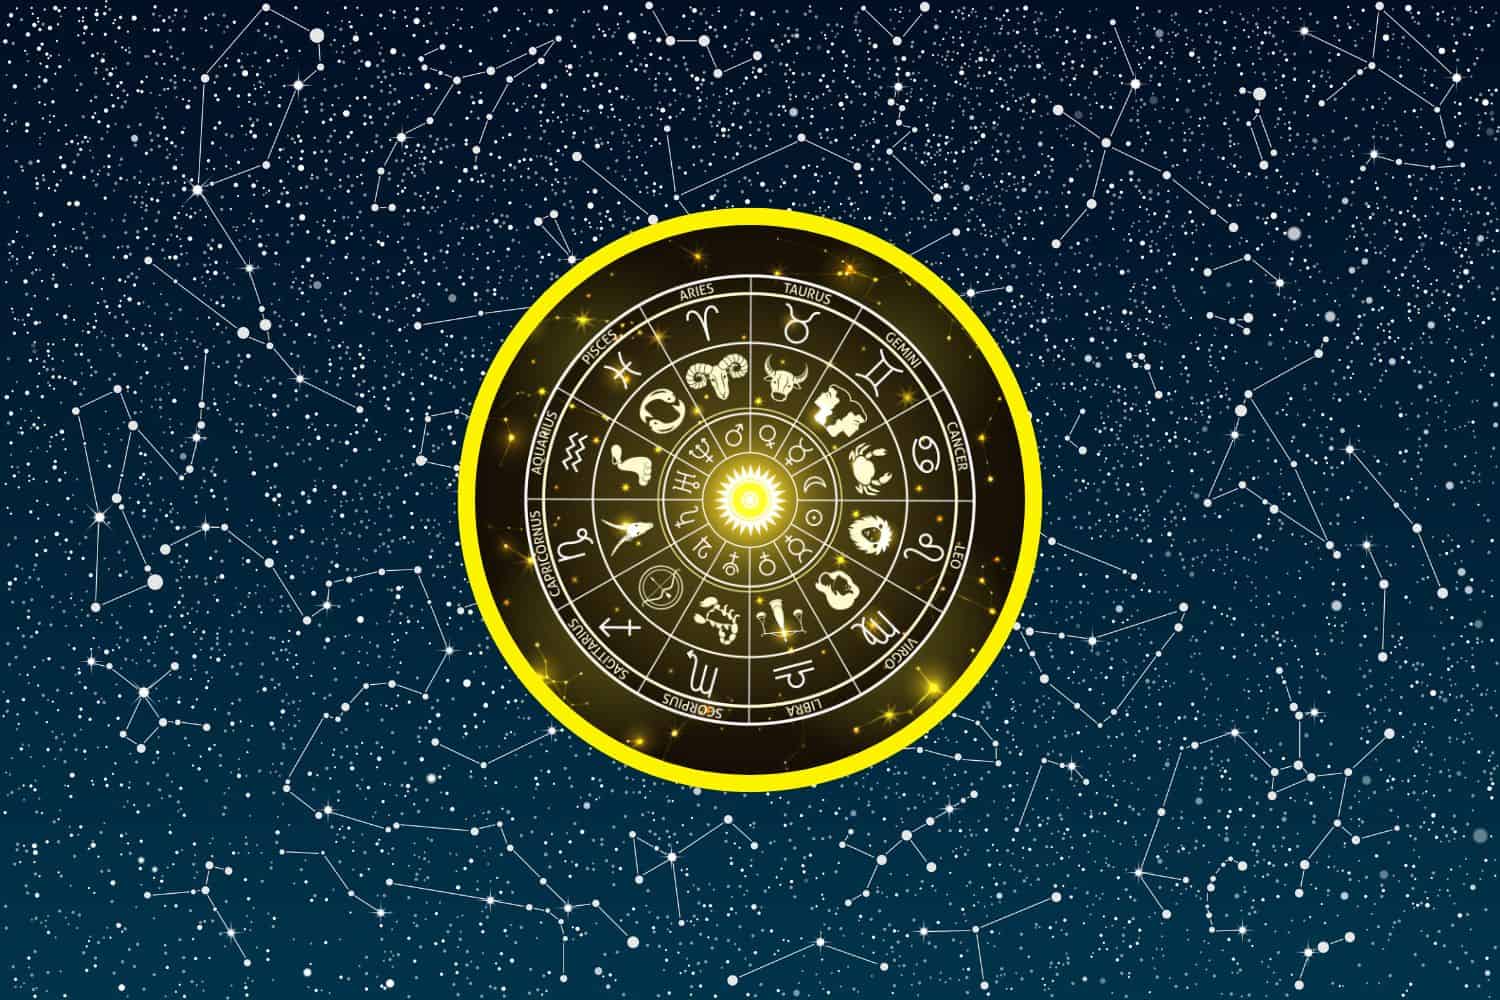 Today’s Free Horoscopes Monday 2 January 2023